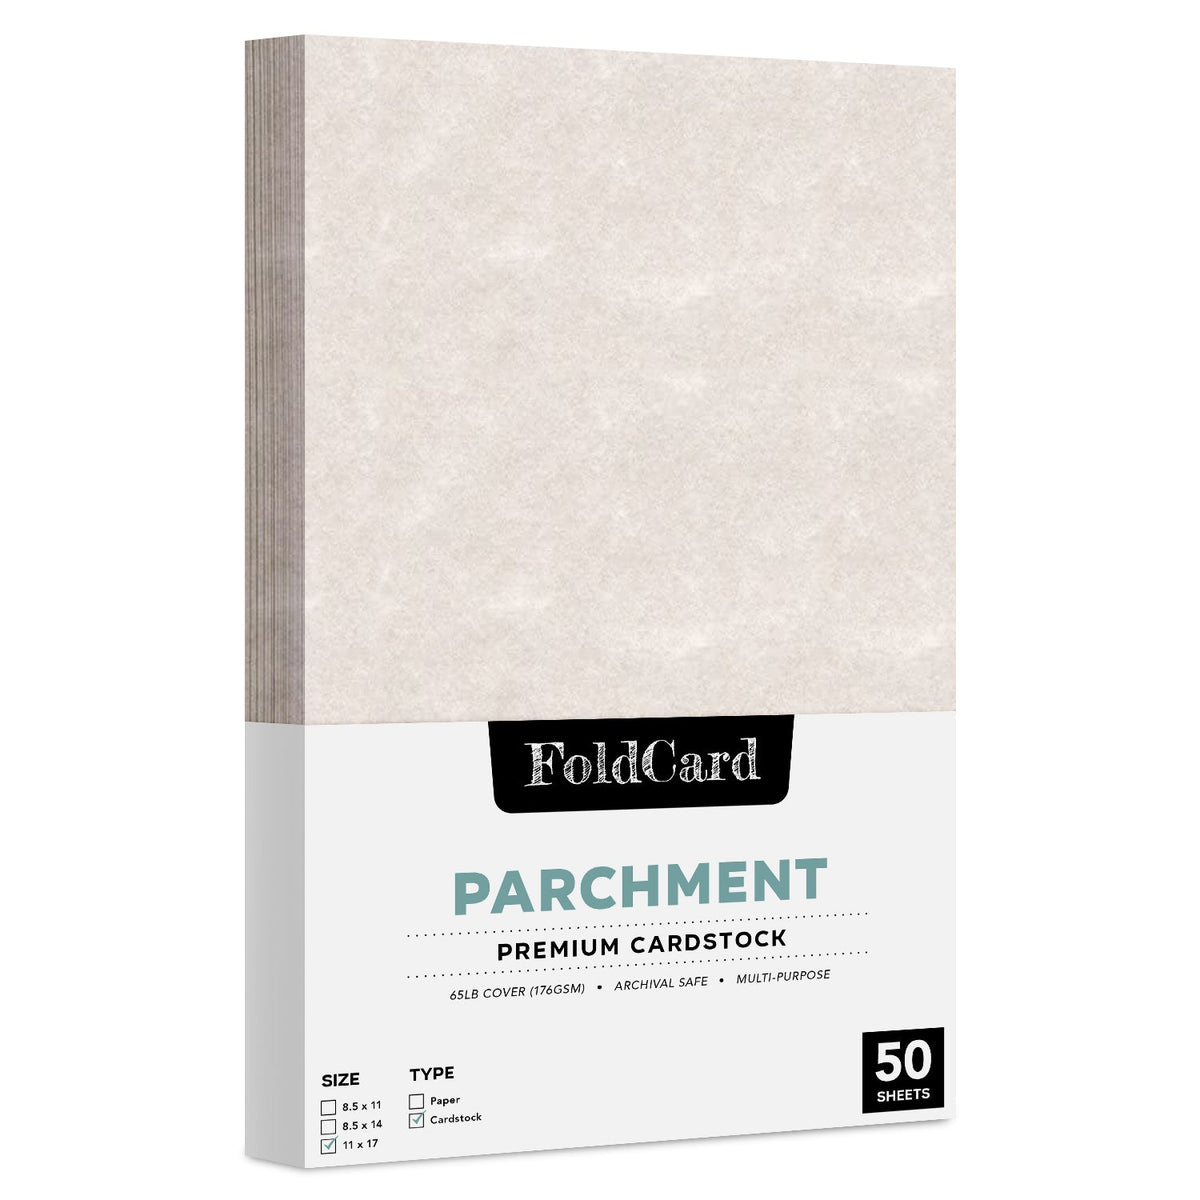 11 x 17 Parchment Paper 65lb Cover 176 gsm 50 Sheets FoldCard